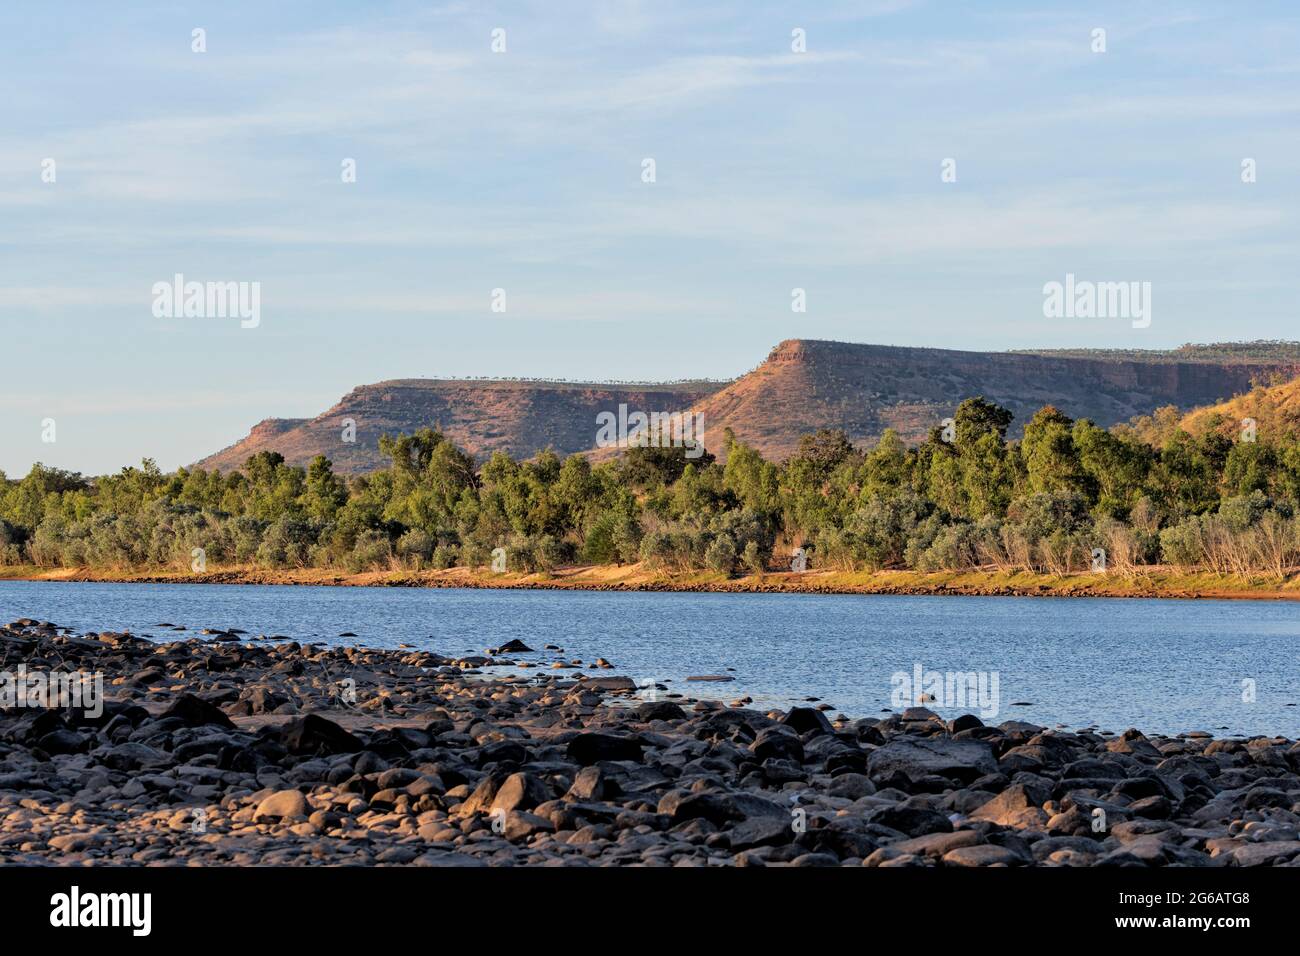 Vue panoramique sur la Pentecôte, Gibb River Road, les Kimberley, Australie occidentale, Australie occidentale, Australie occidentale, Australie Banque D'Images